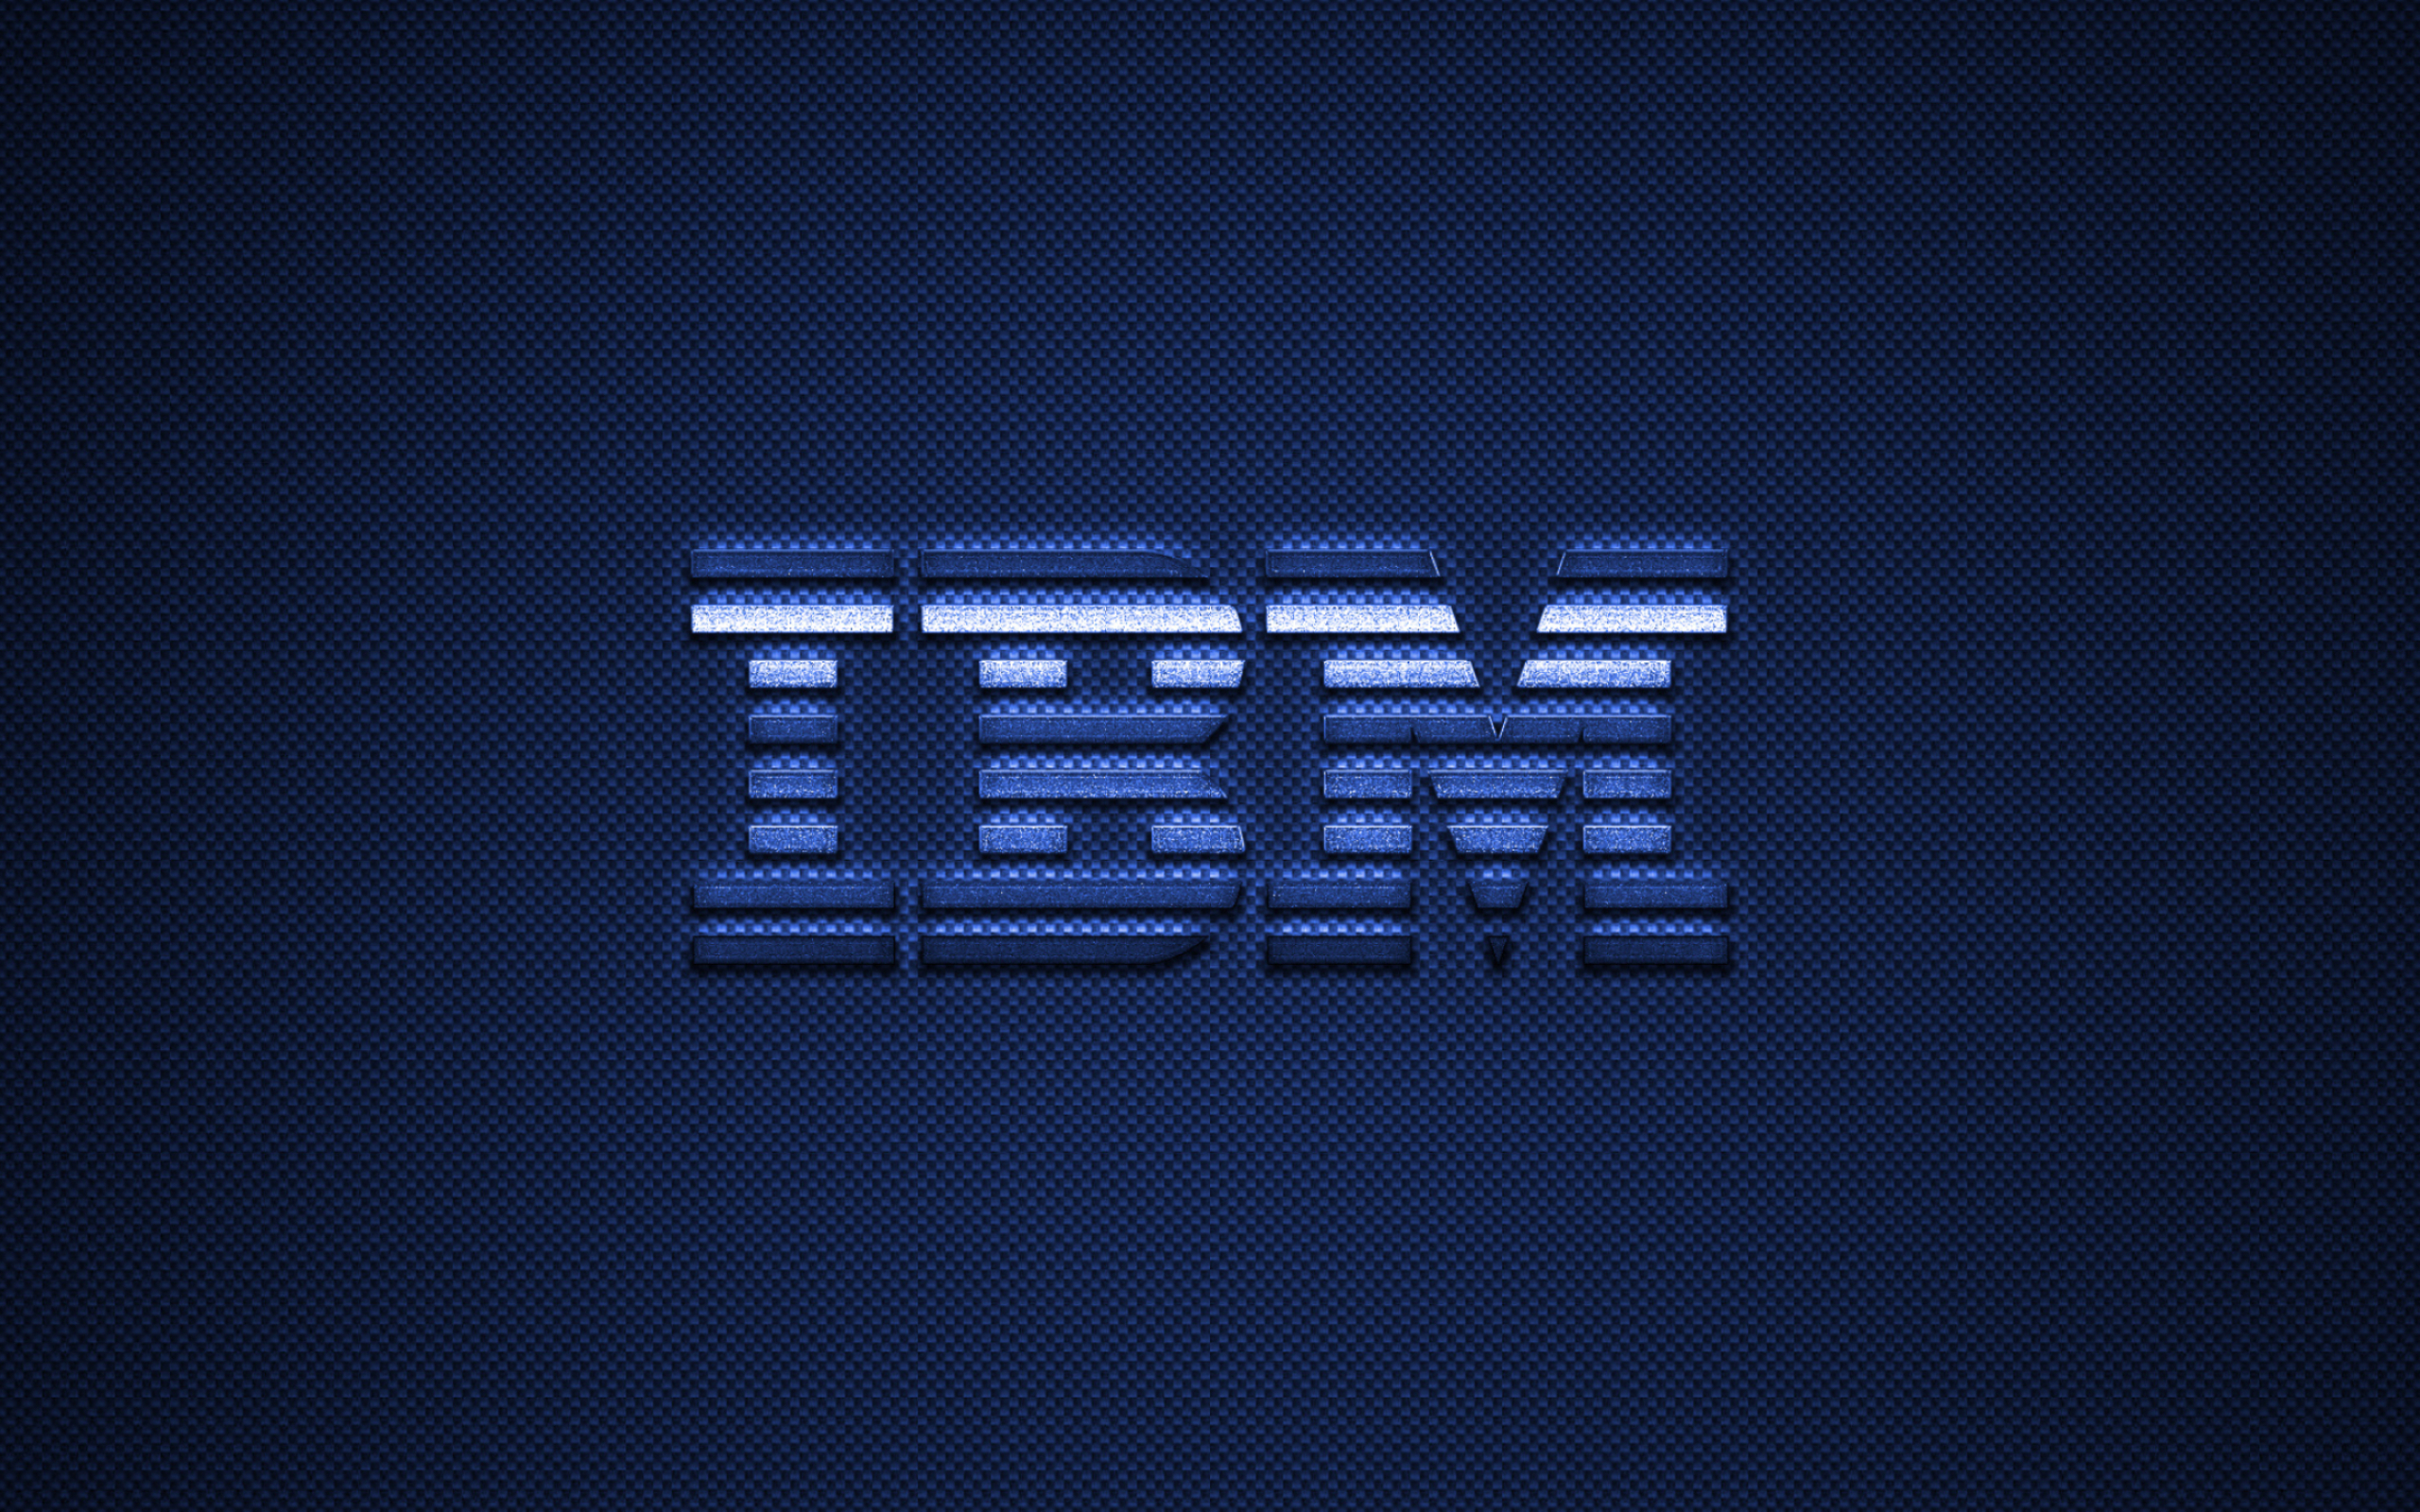 IBM, Blue carbon texture, Emblem design, High quality images, 2560x1600 HD Desktop